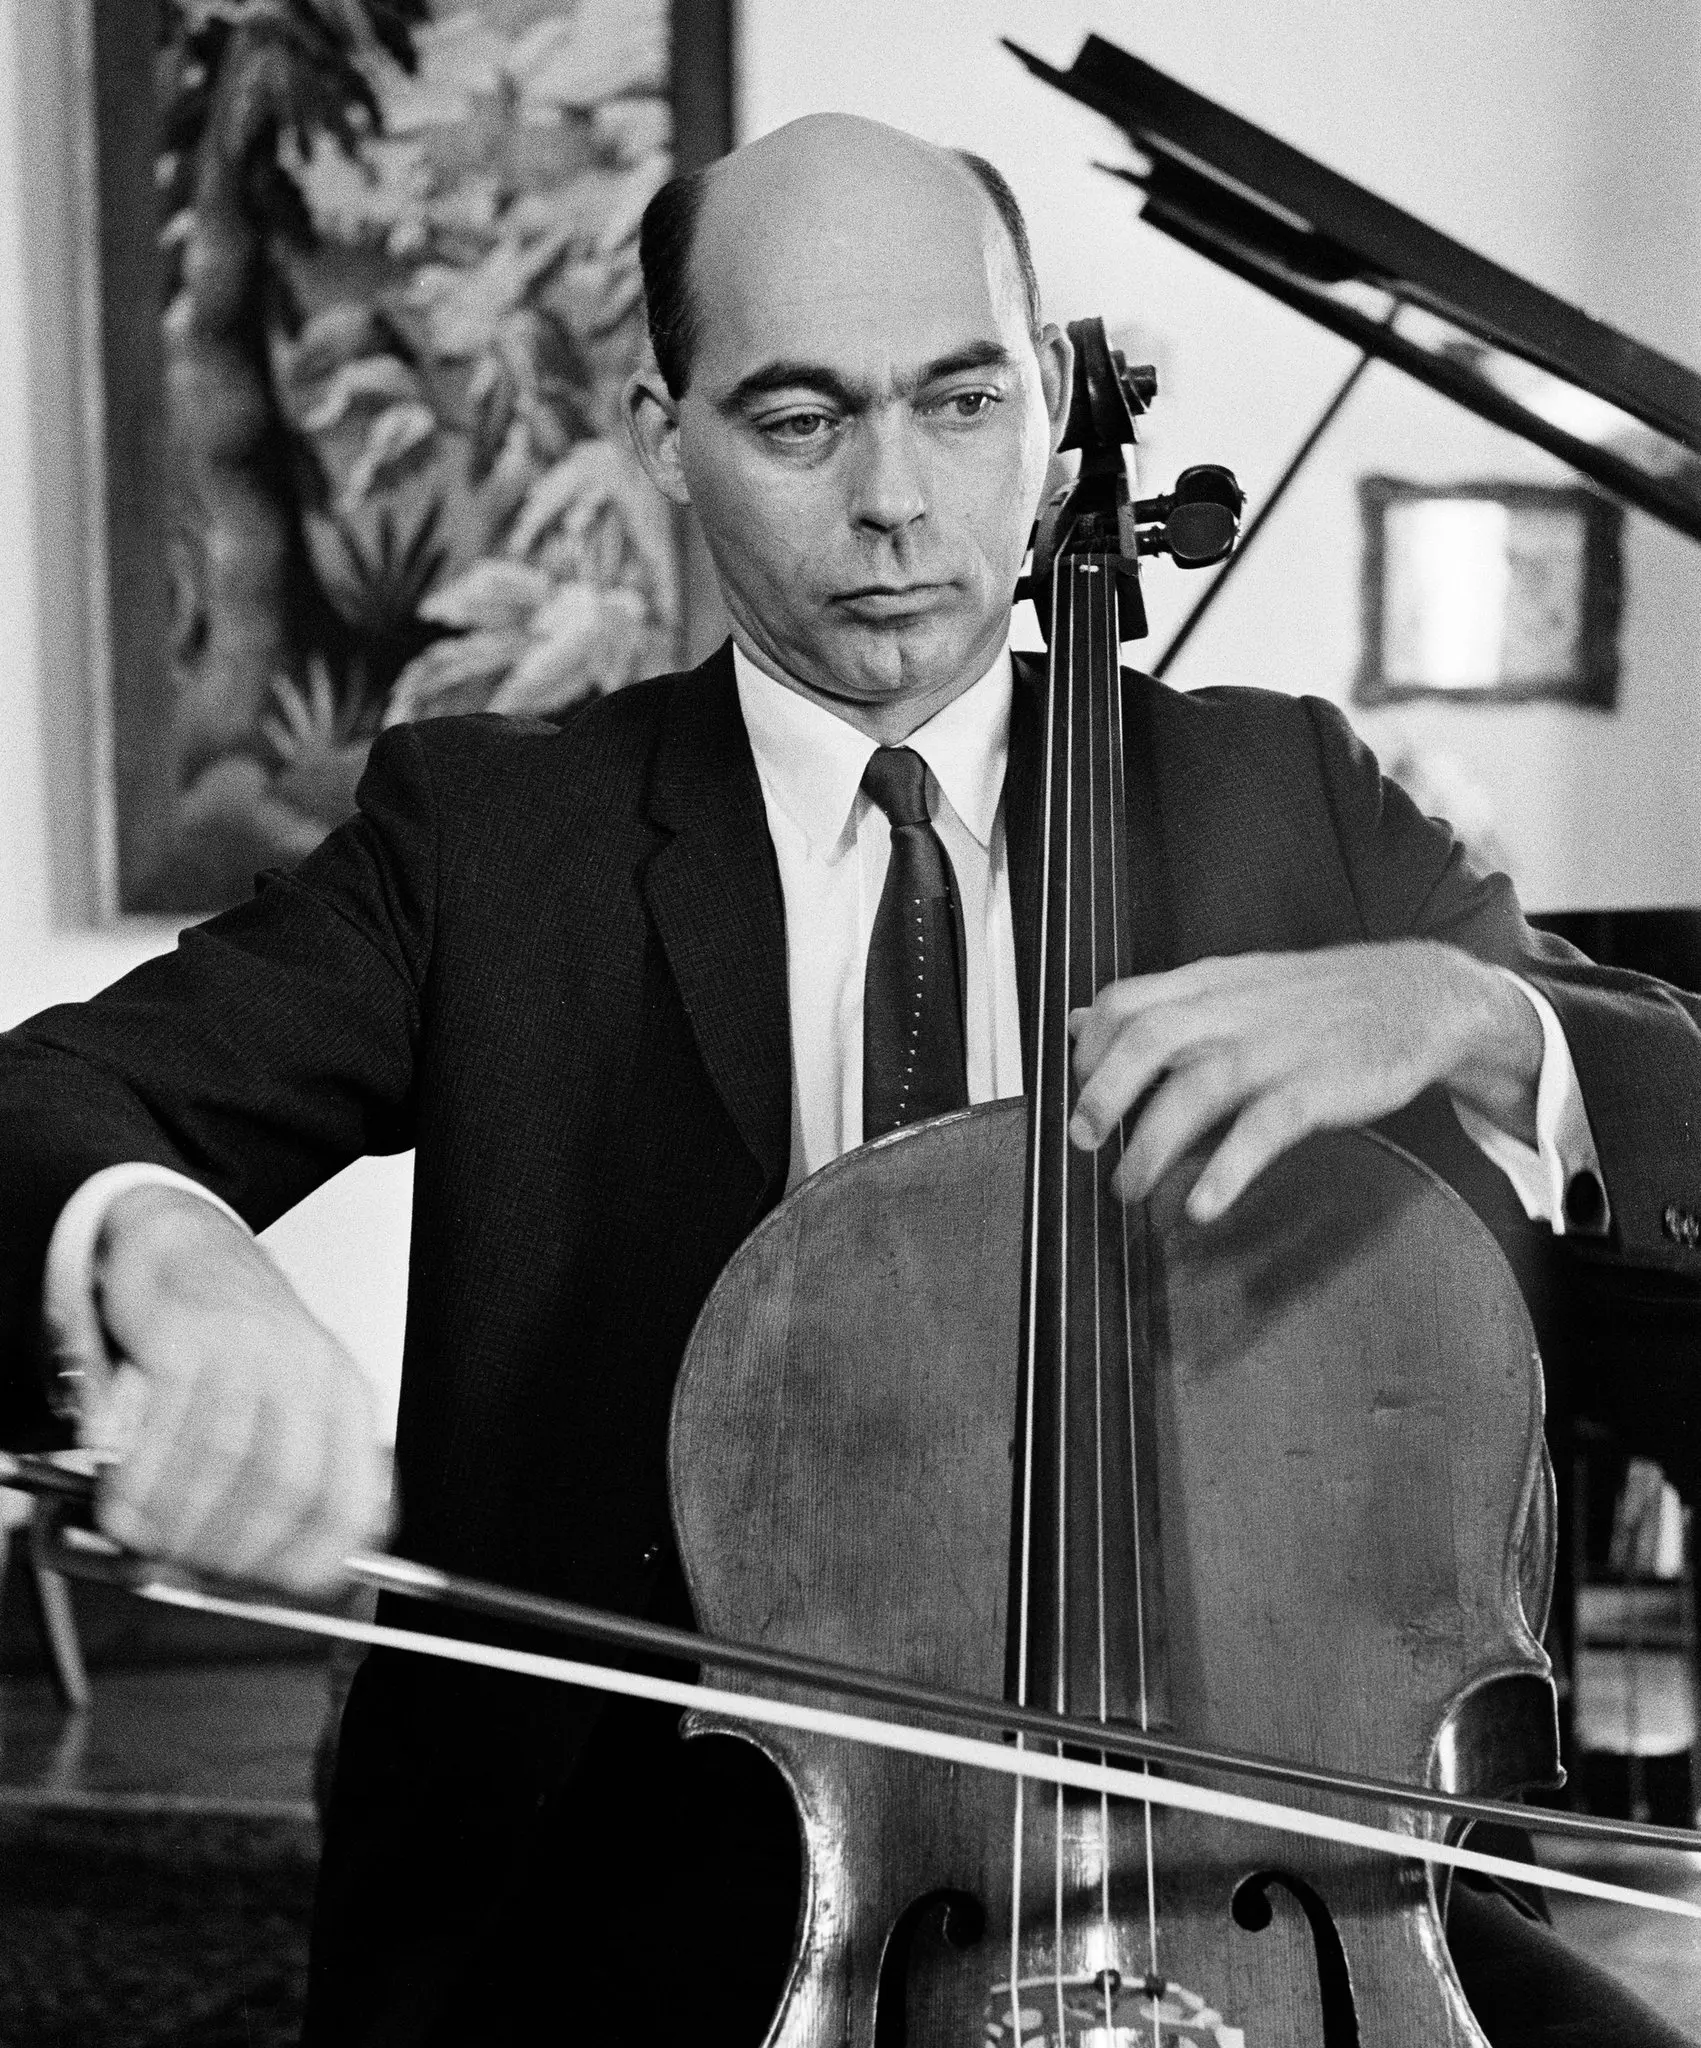 Janos Starker em 1964. O violoncelista era conhecido mundialmente por seus ensinamentos, bem como por suas performances e gravações. (Crédito de fotografia: Cortesia Sam Falk/The New York Times)